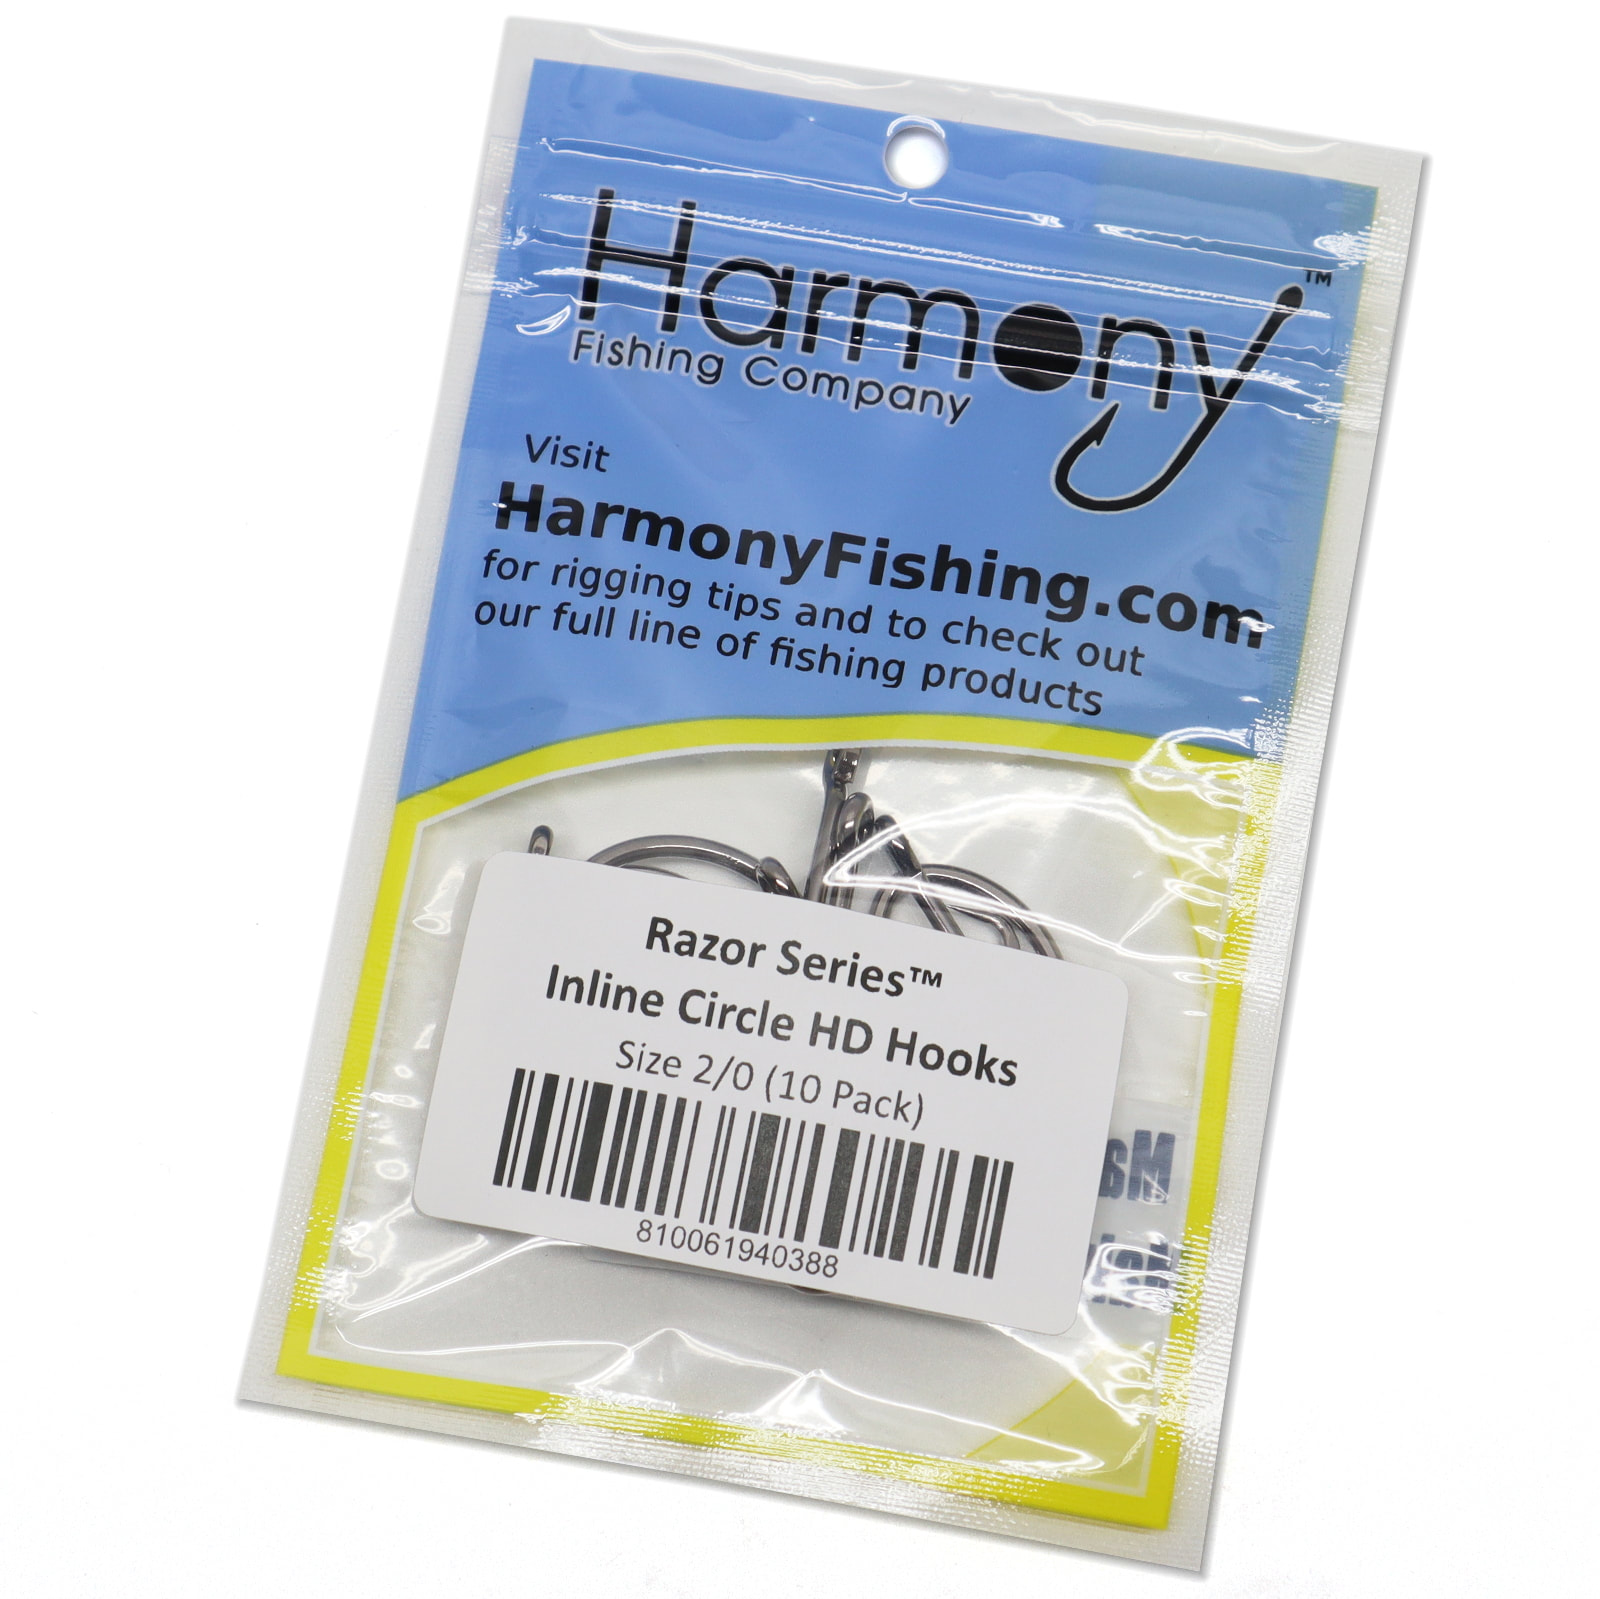 Swimbaits & UnderSpins - Harmony Fishing - Harmony Fishing Company